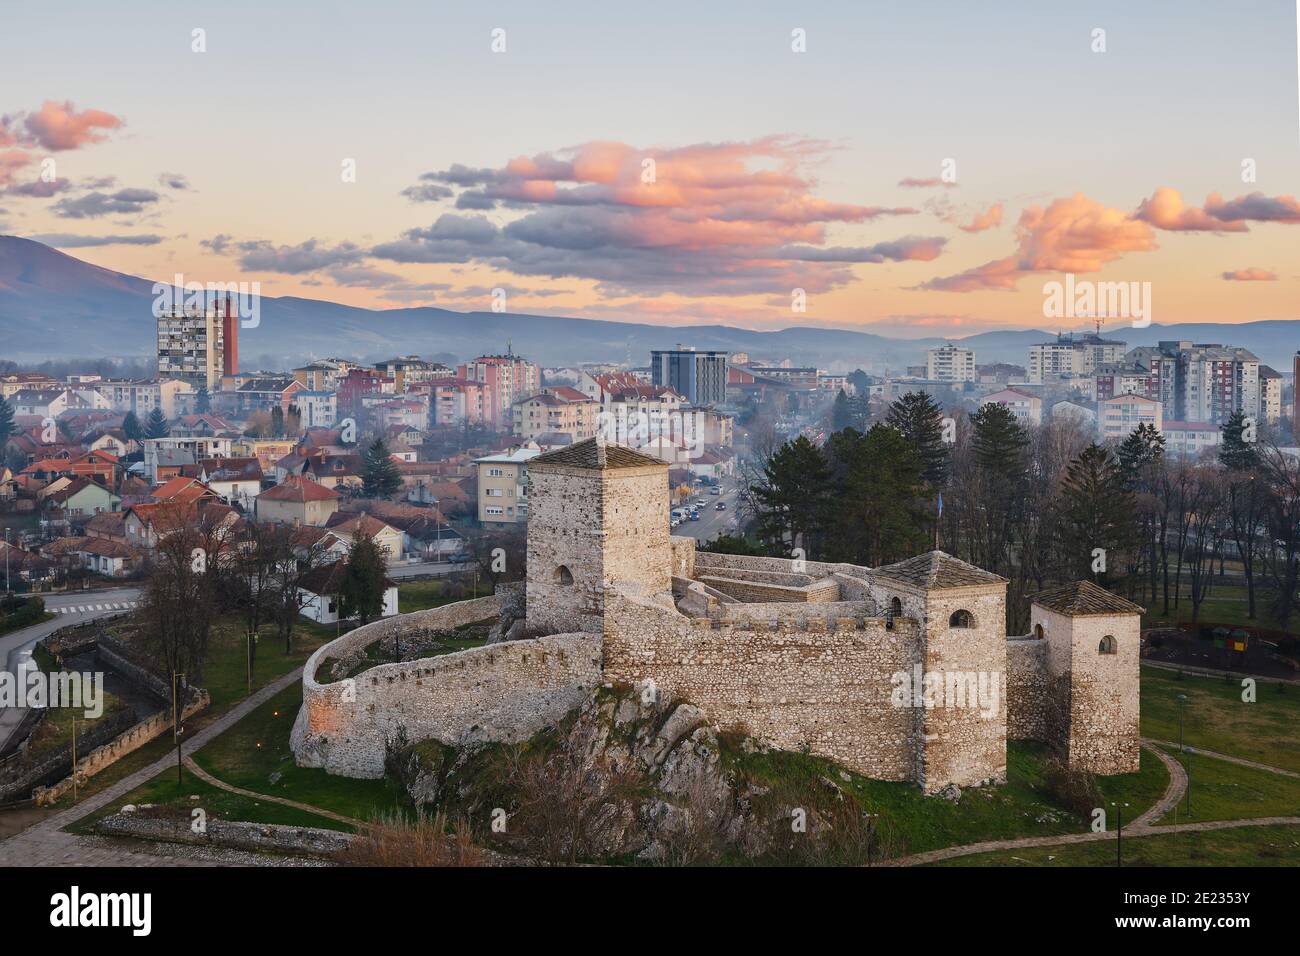 Wunderschöne, sanfte Farben der Wolken auf einem Sonnenuntergangshimmel über der alten Festung vor einer landschaftlich schönen, nebligen, verträumten Stadtlandschaft von Pirot, Serbien Stockfoto